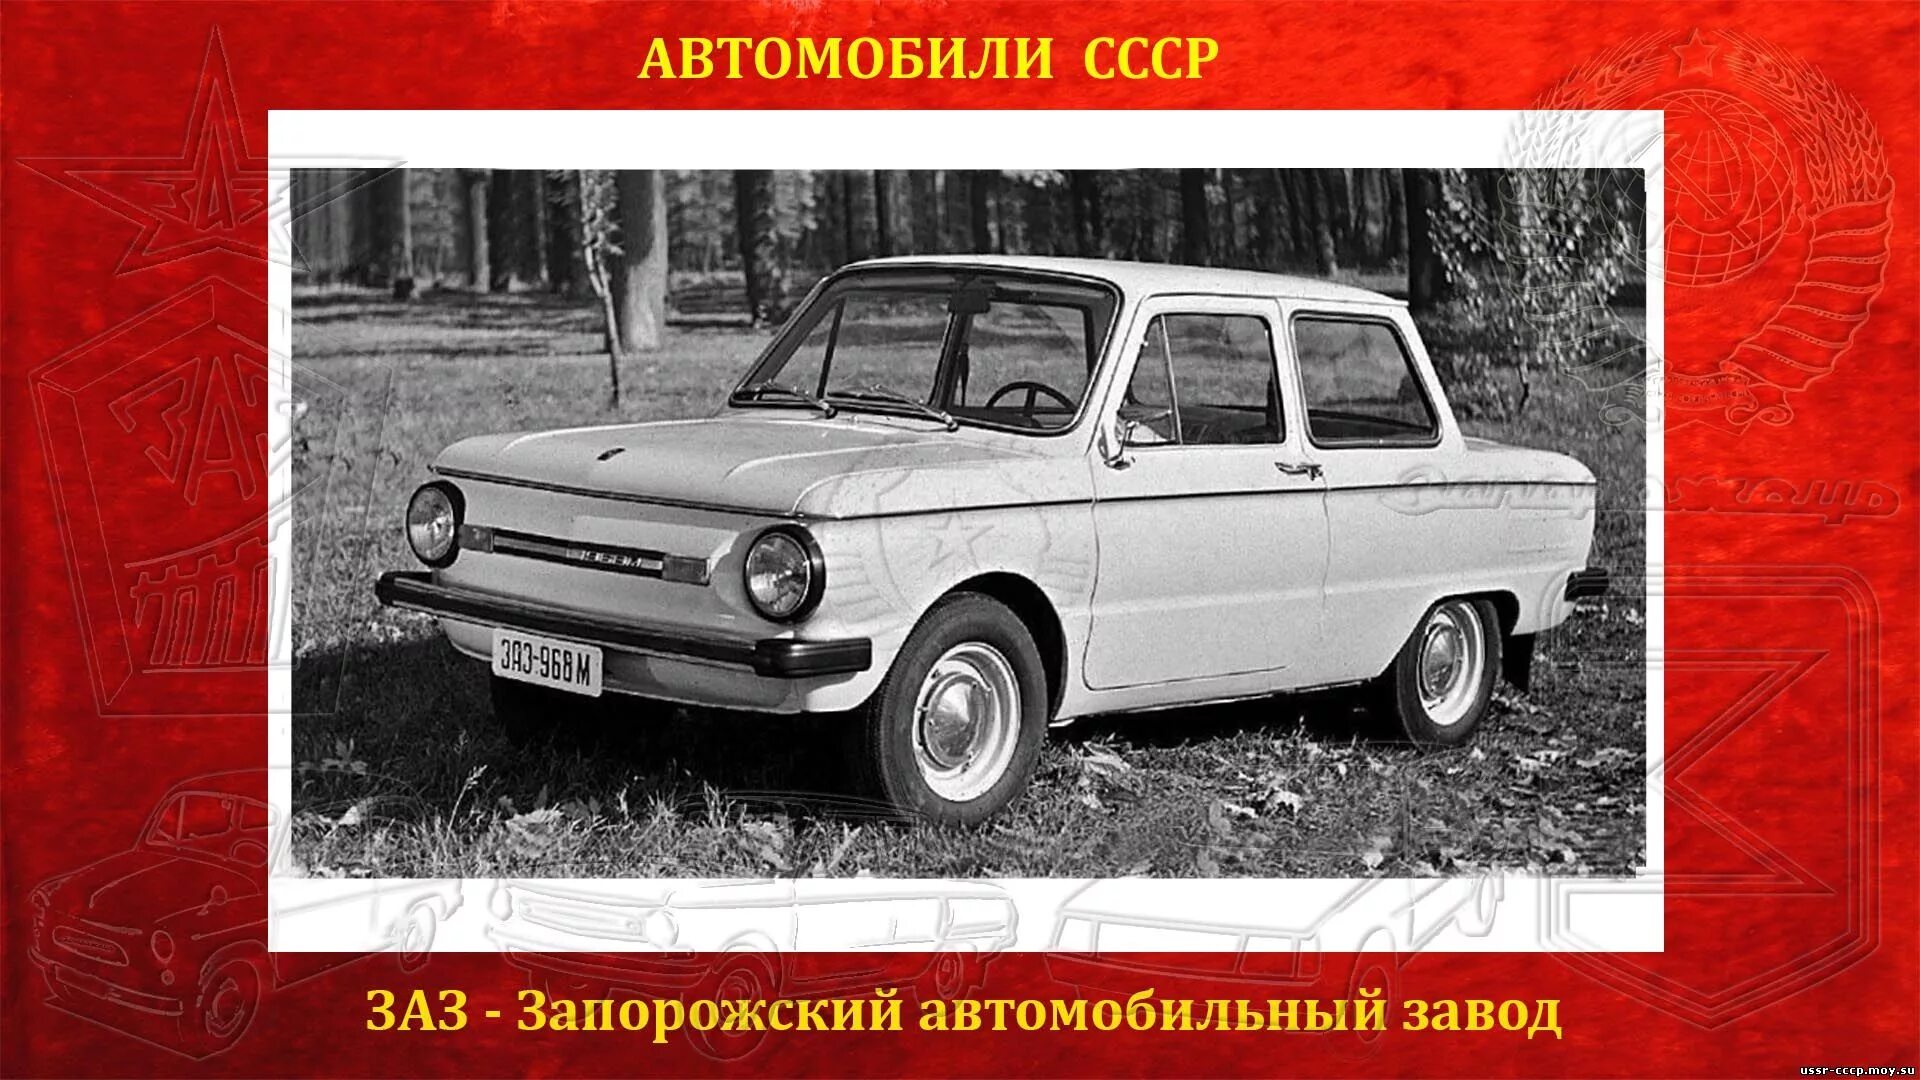 ЗАЗ 968м красный 1980 года. ЗАЗ 968 вес. Авто СССР Запорожец. СССР автомобиль Наименование.